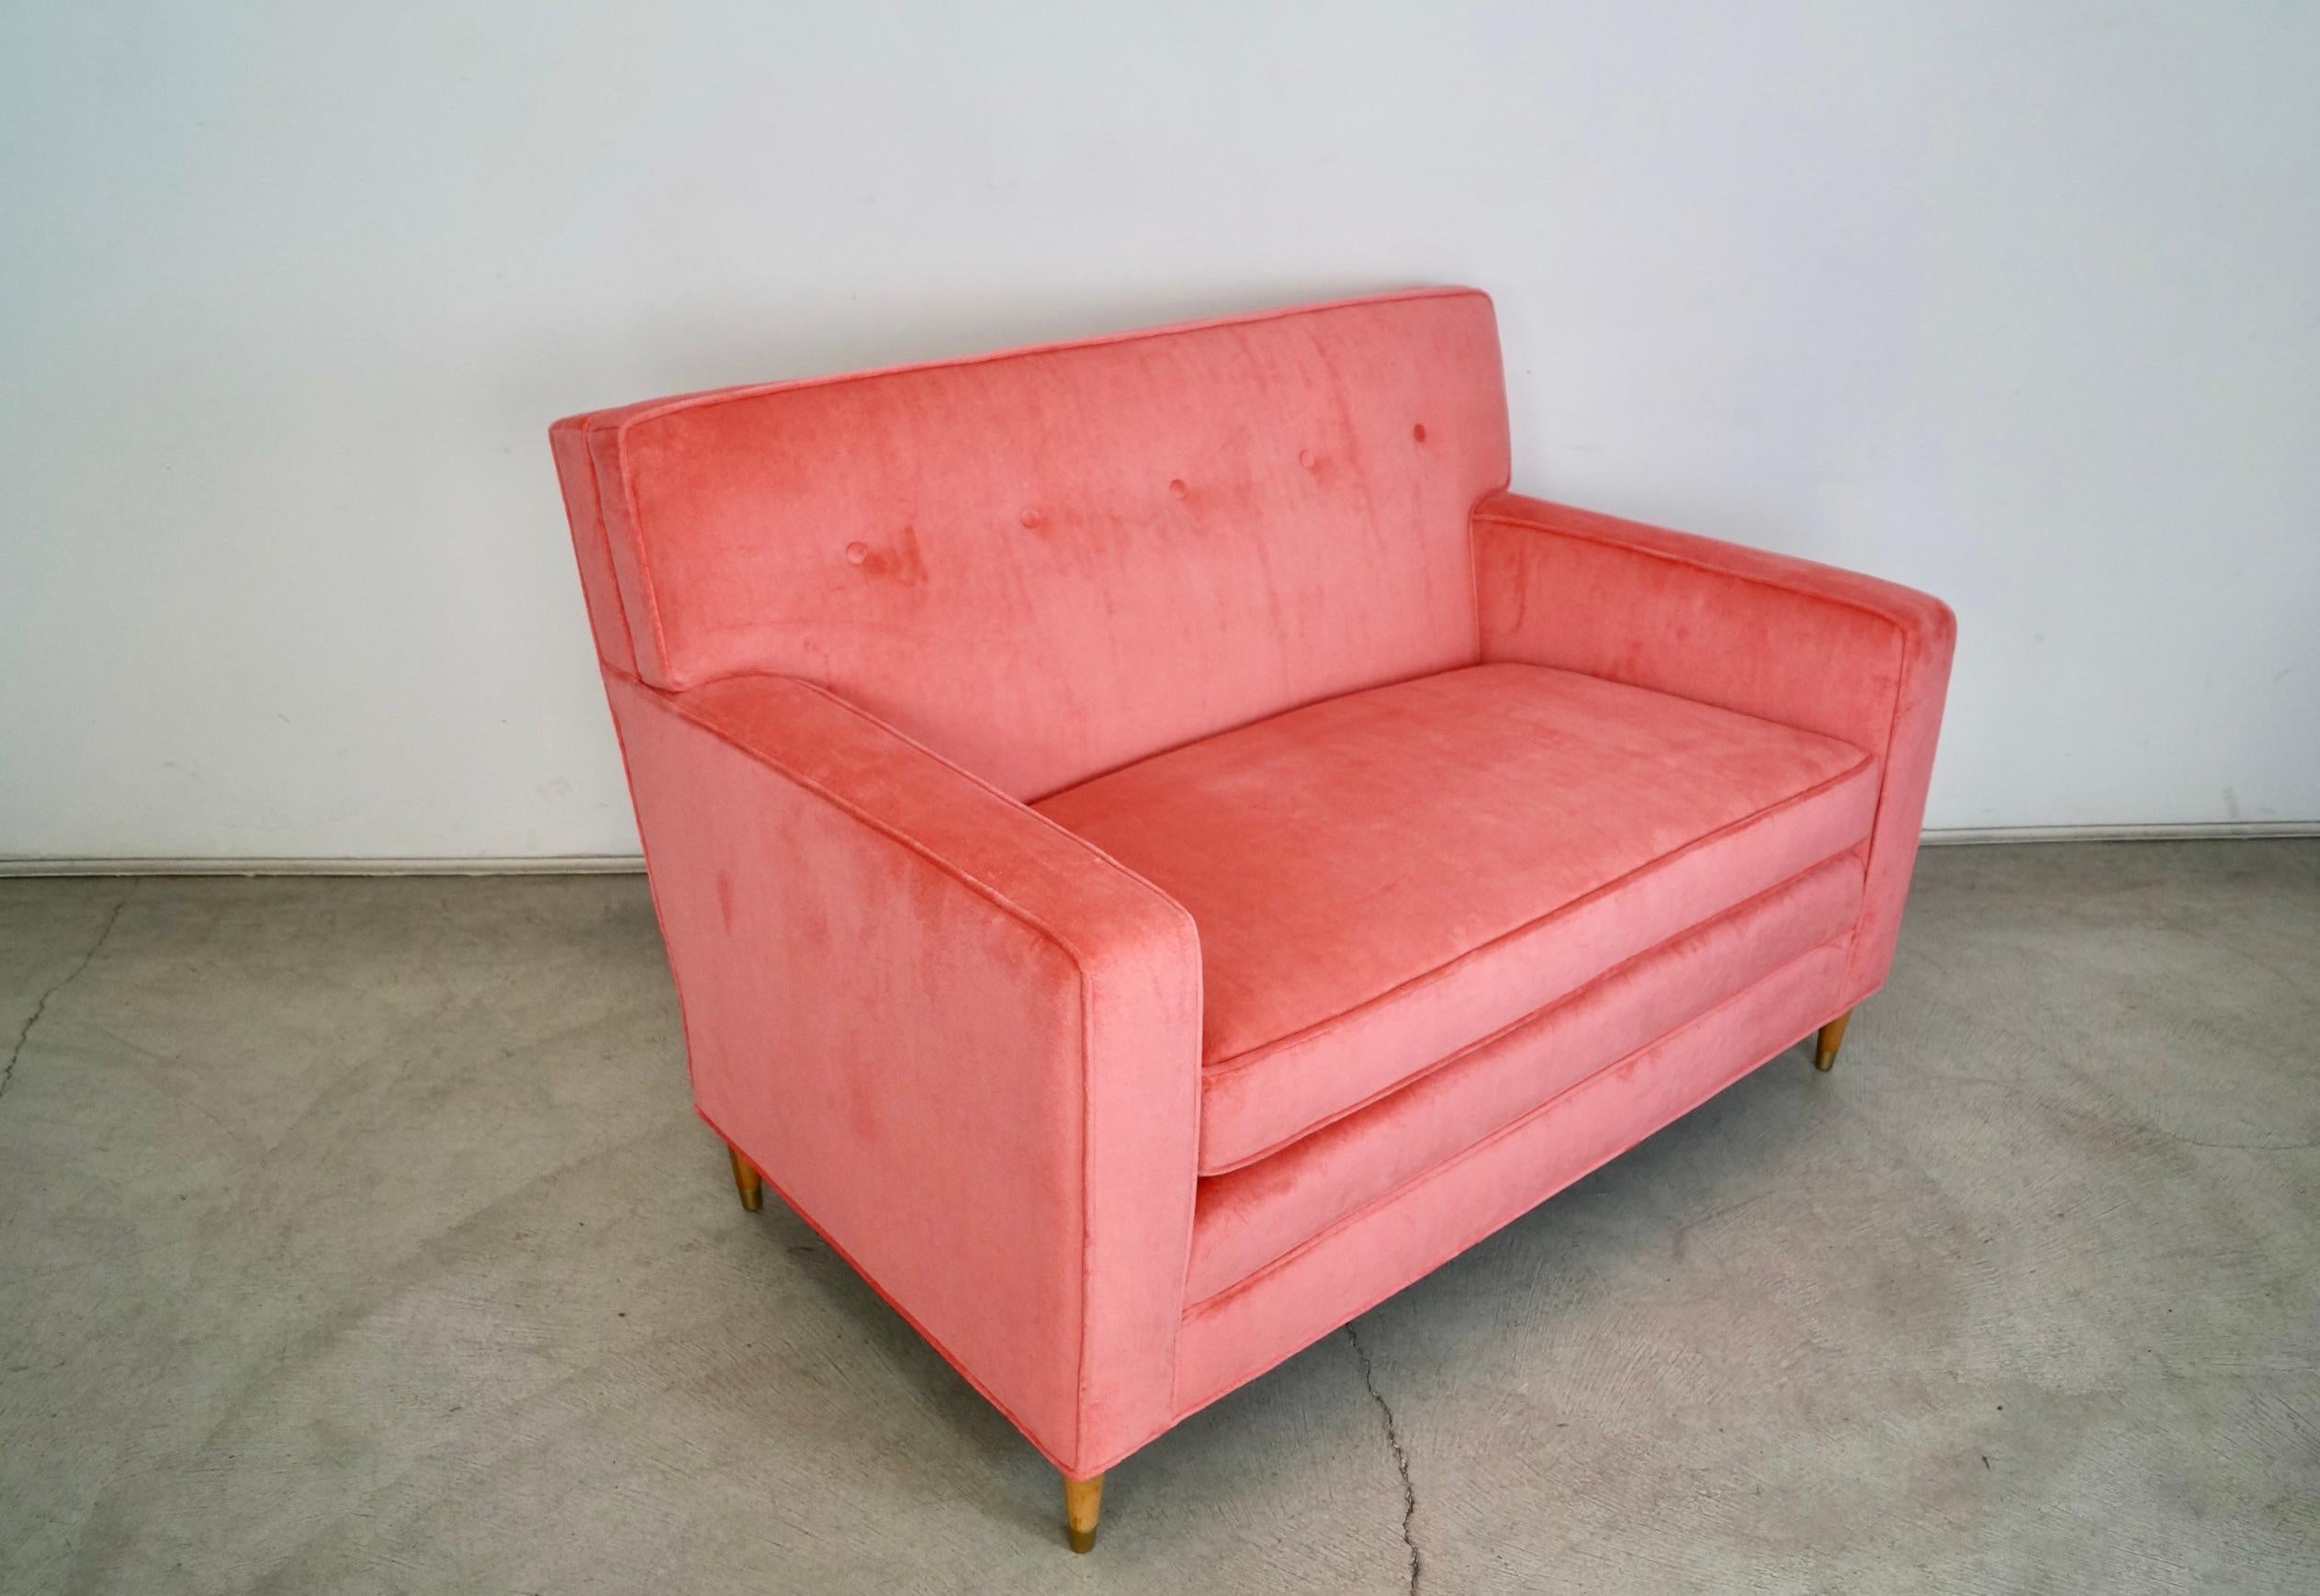 1950's Mid-Century Modern Loveseat Sofa Reupholstered in Pink Velvet For Sale 2